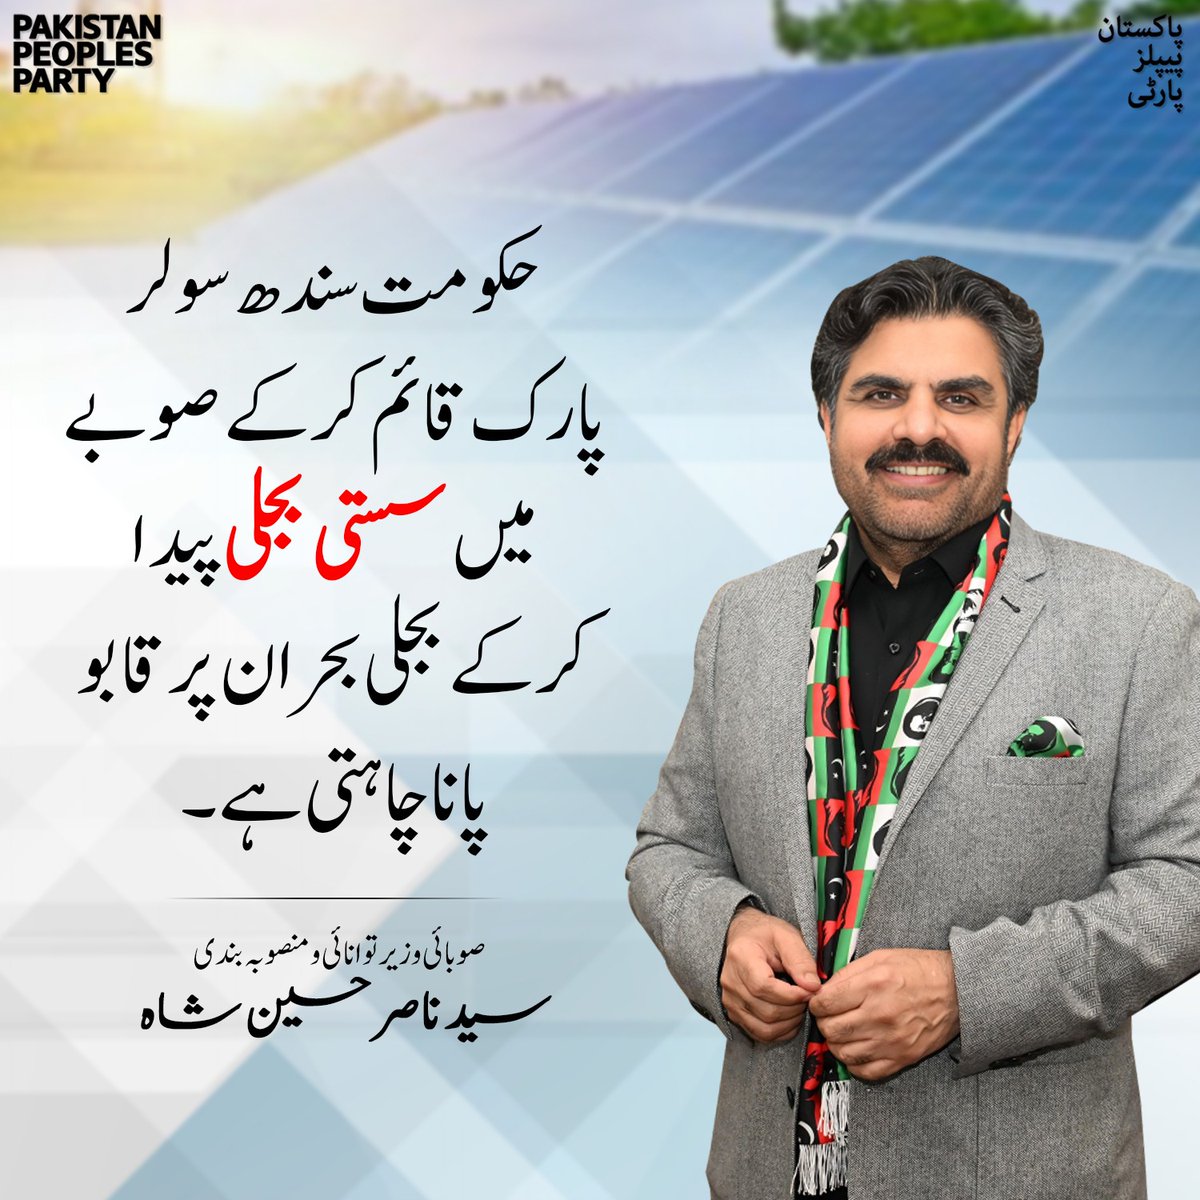 حکومت سندھ سولر پارک قائم کرکے صوبے میں سستی بجلی پیدا کرکے بجلی بحران پر قابو پانا چاہتی ہے۔ وزیر توانائی سندھ سید ناصر حسین شاہ